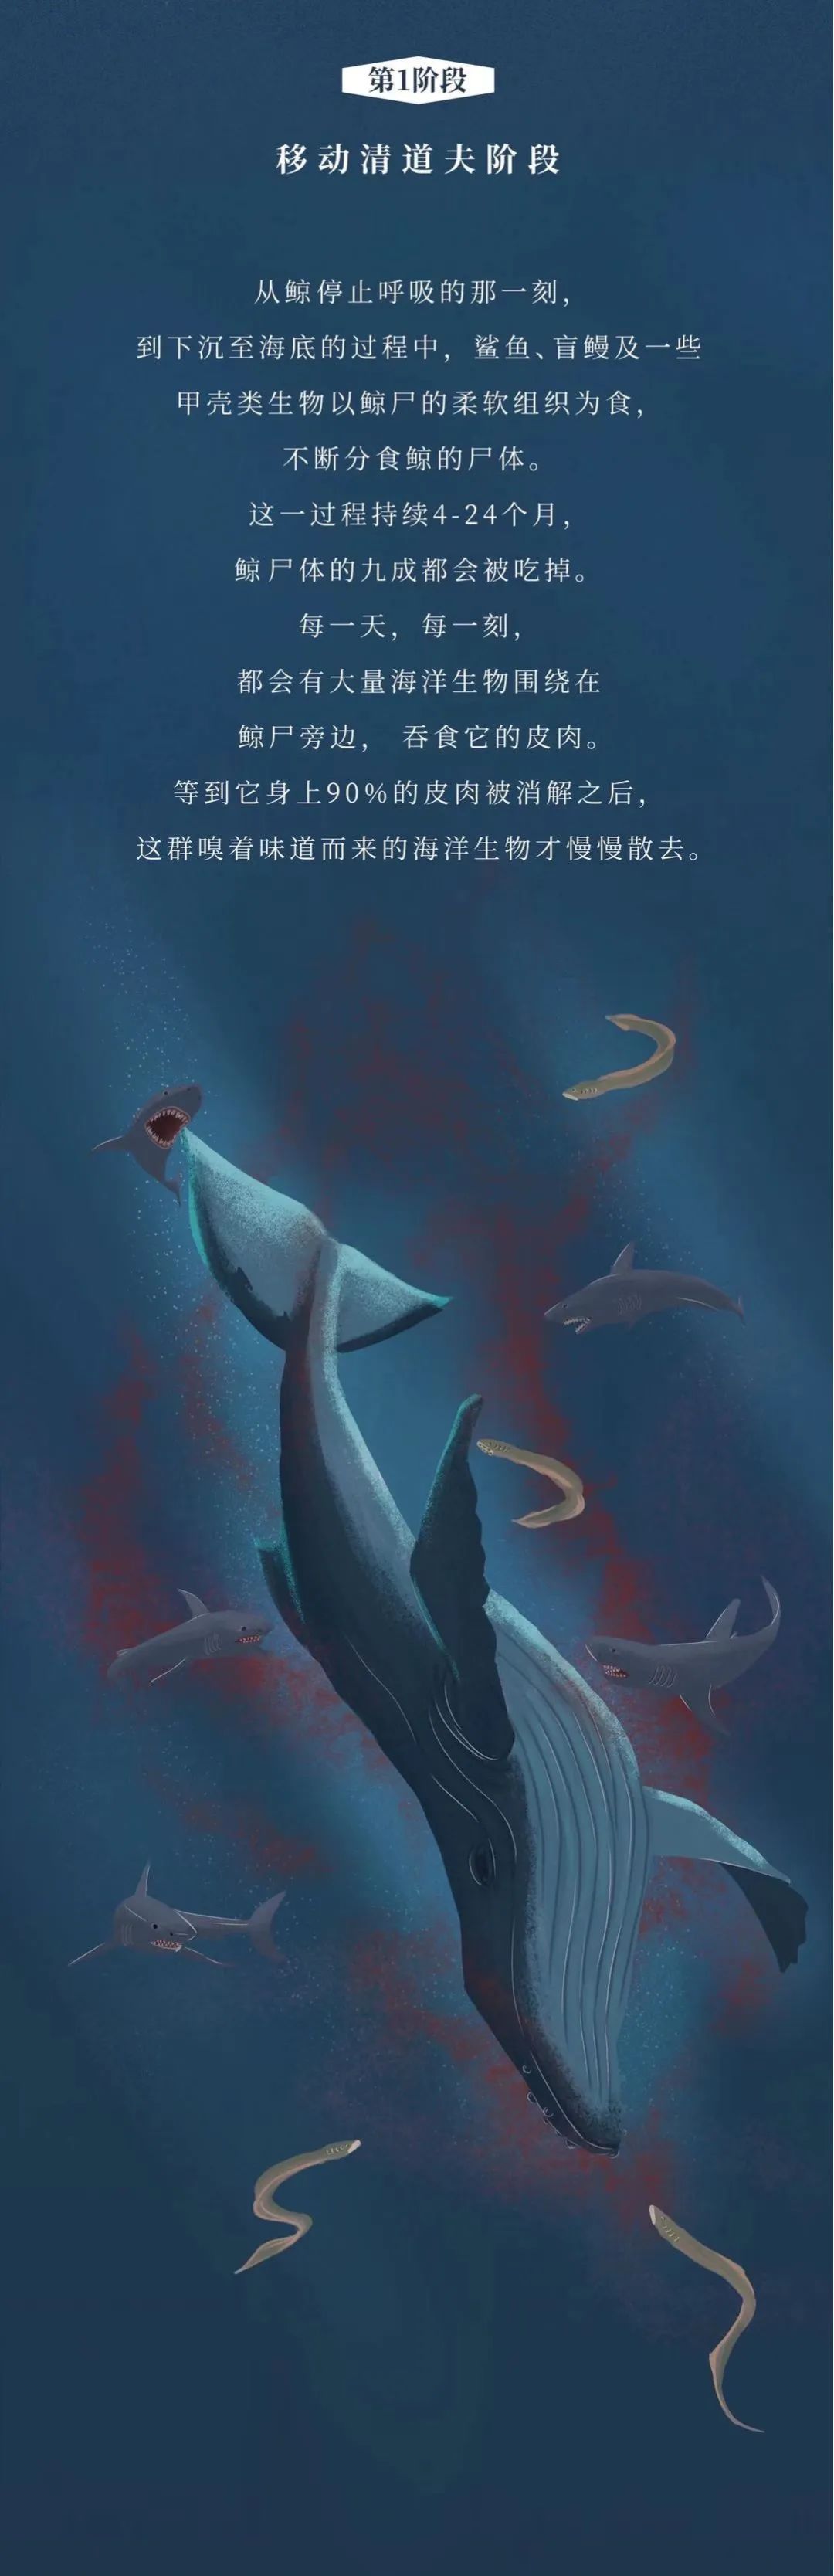 鲸落,世上最残忍的死亡,最温柔的重生